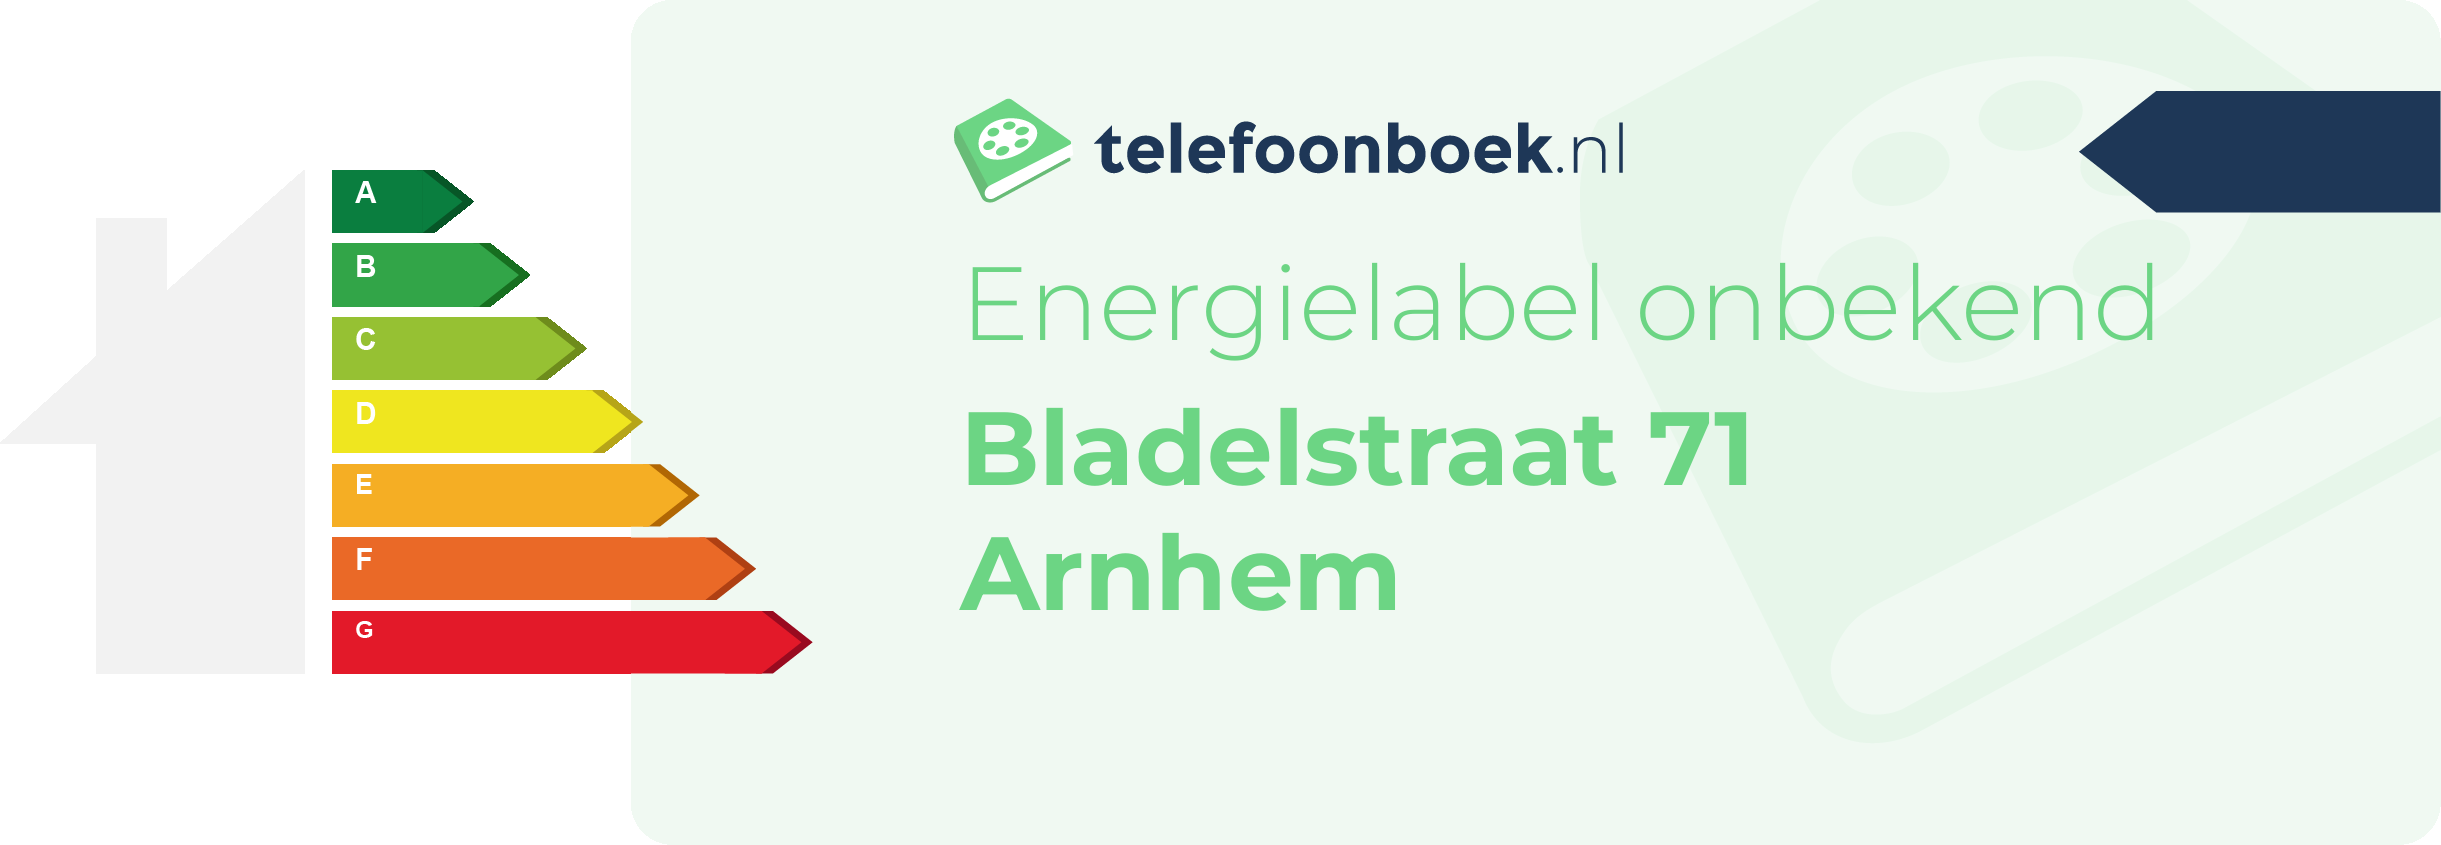 Energielabel Bladelstraat 71 Arnhem